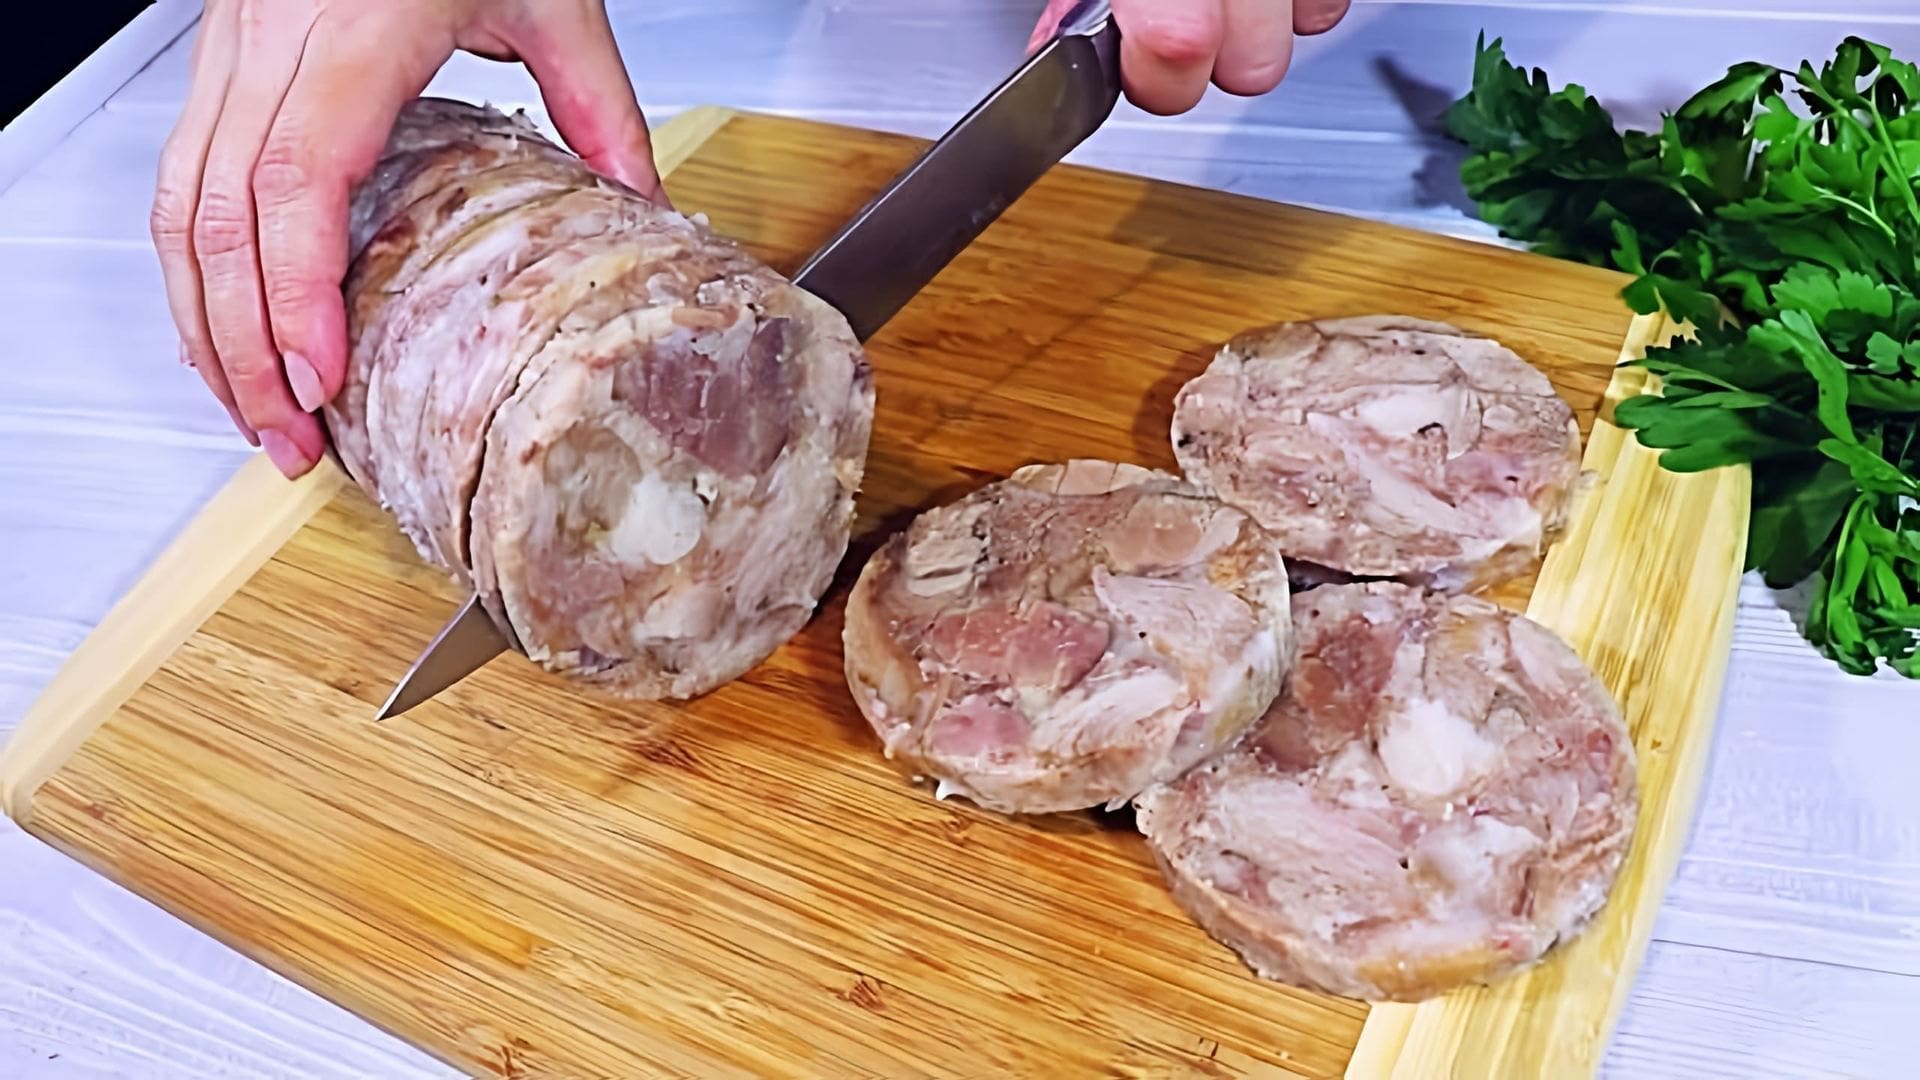 В этом видео демонстрируется процесс приготовления домашнего зельца из мяса и бульона